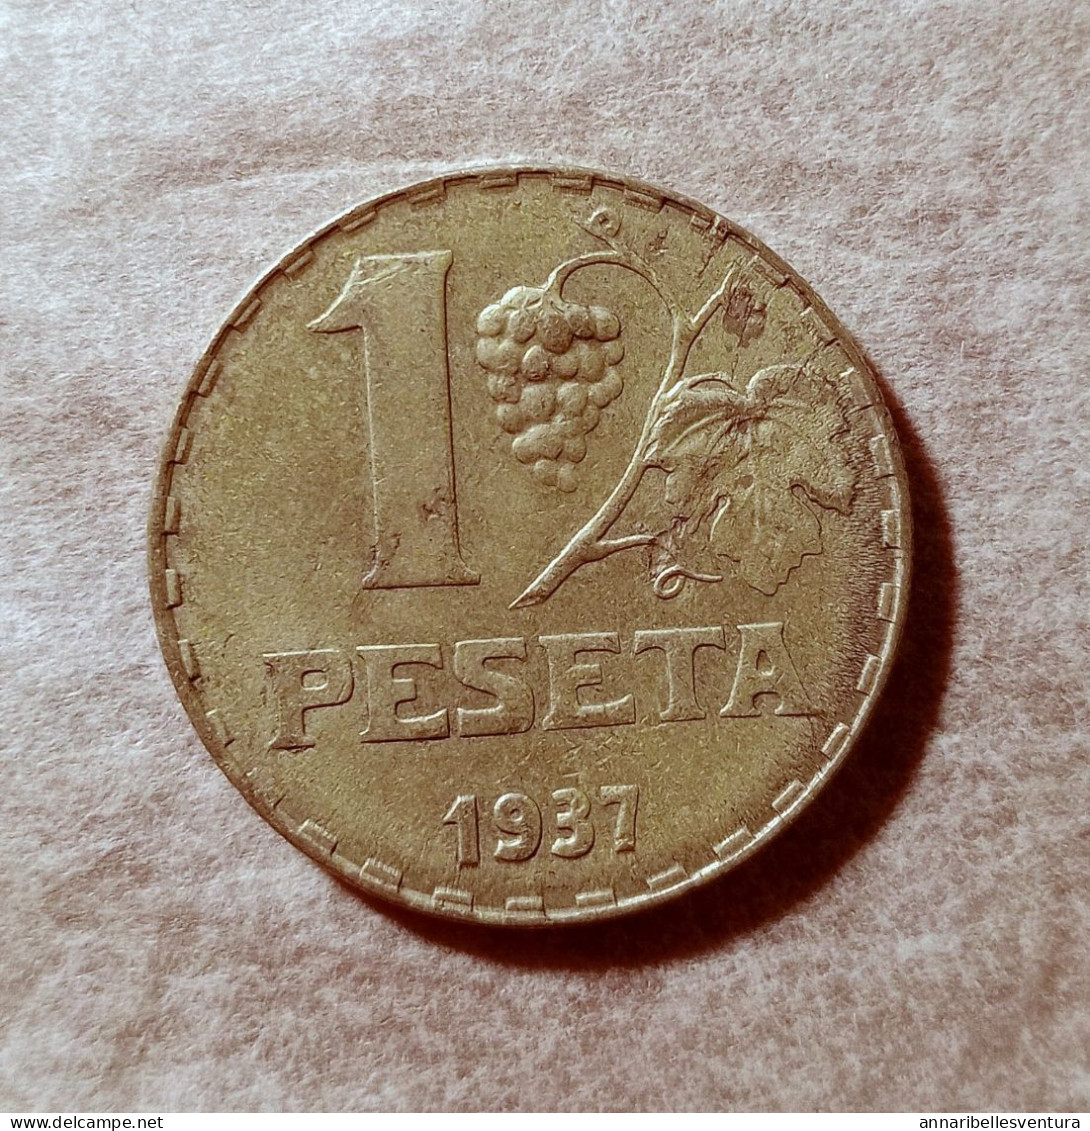 1 PESETA, ALFONSO XIII 1937. - Republikanische Zone